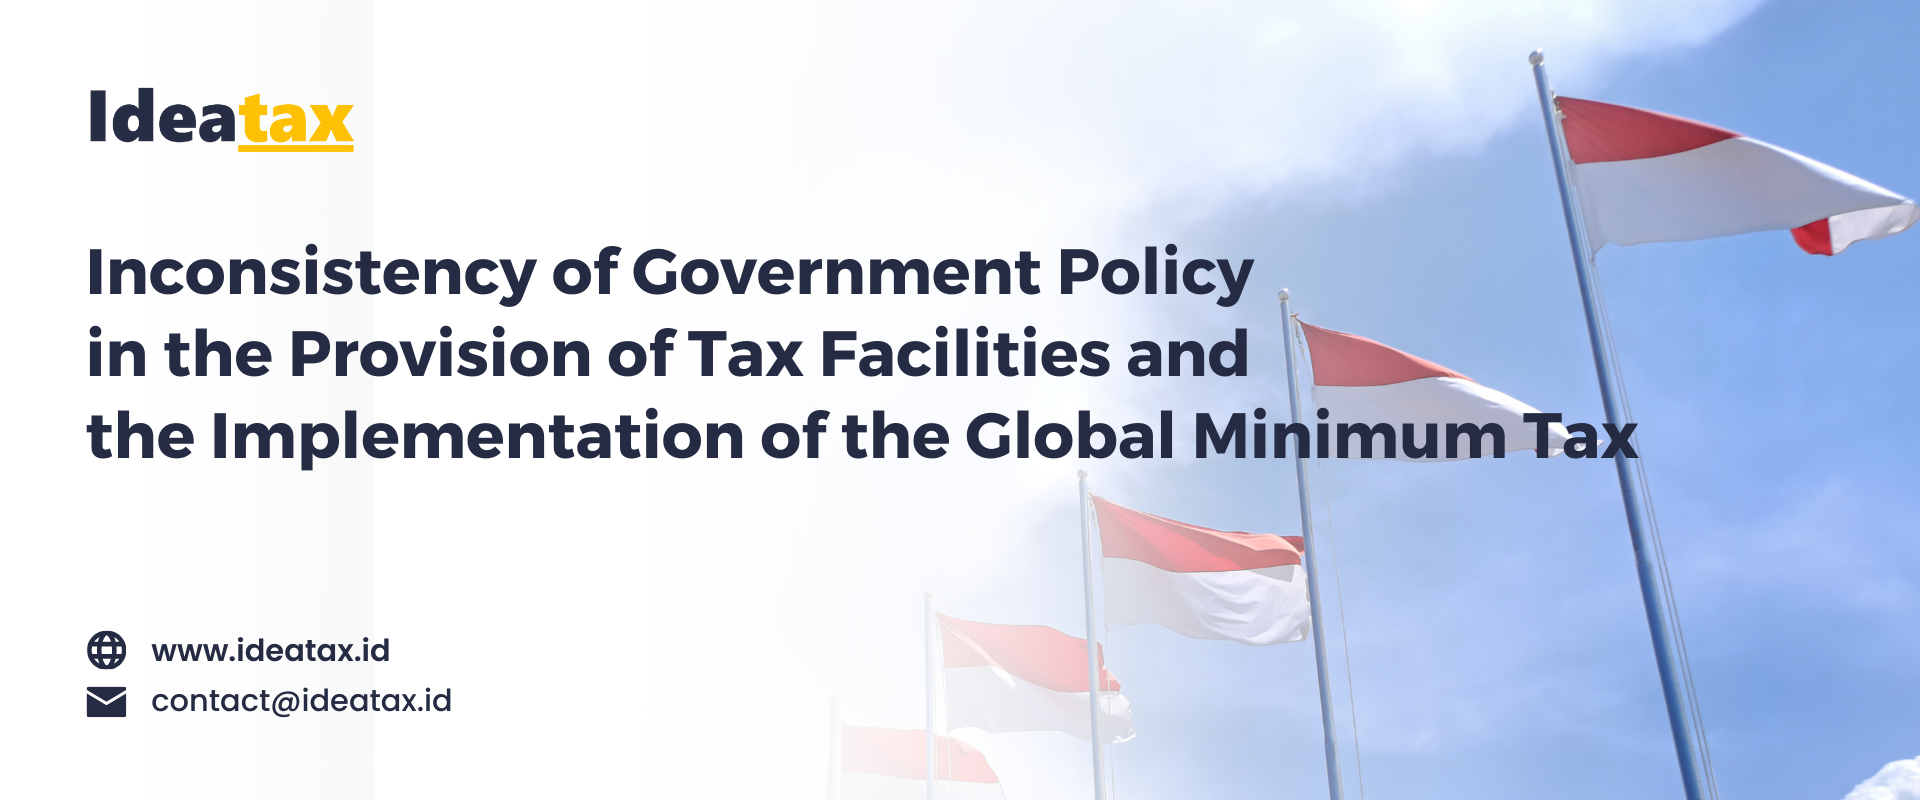 Inkonsistensi Kebijakan Pemerintah  dalam pemberian Fasilitas Perpajakan dan Penerapan Global Minimum Tax